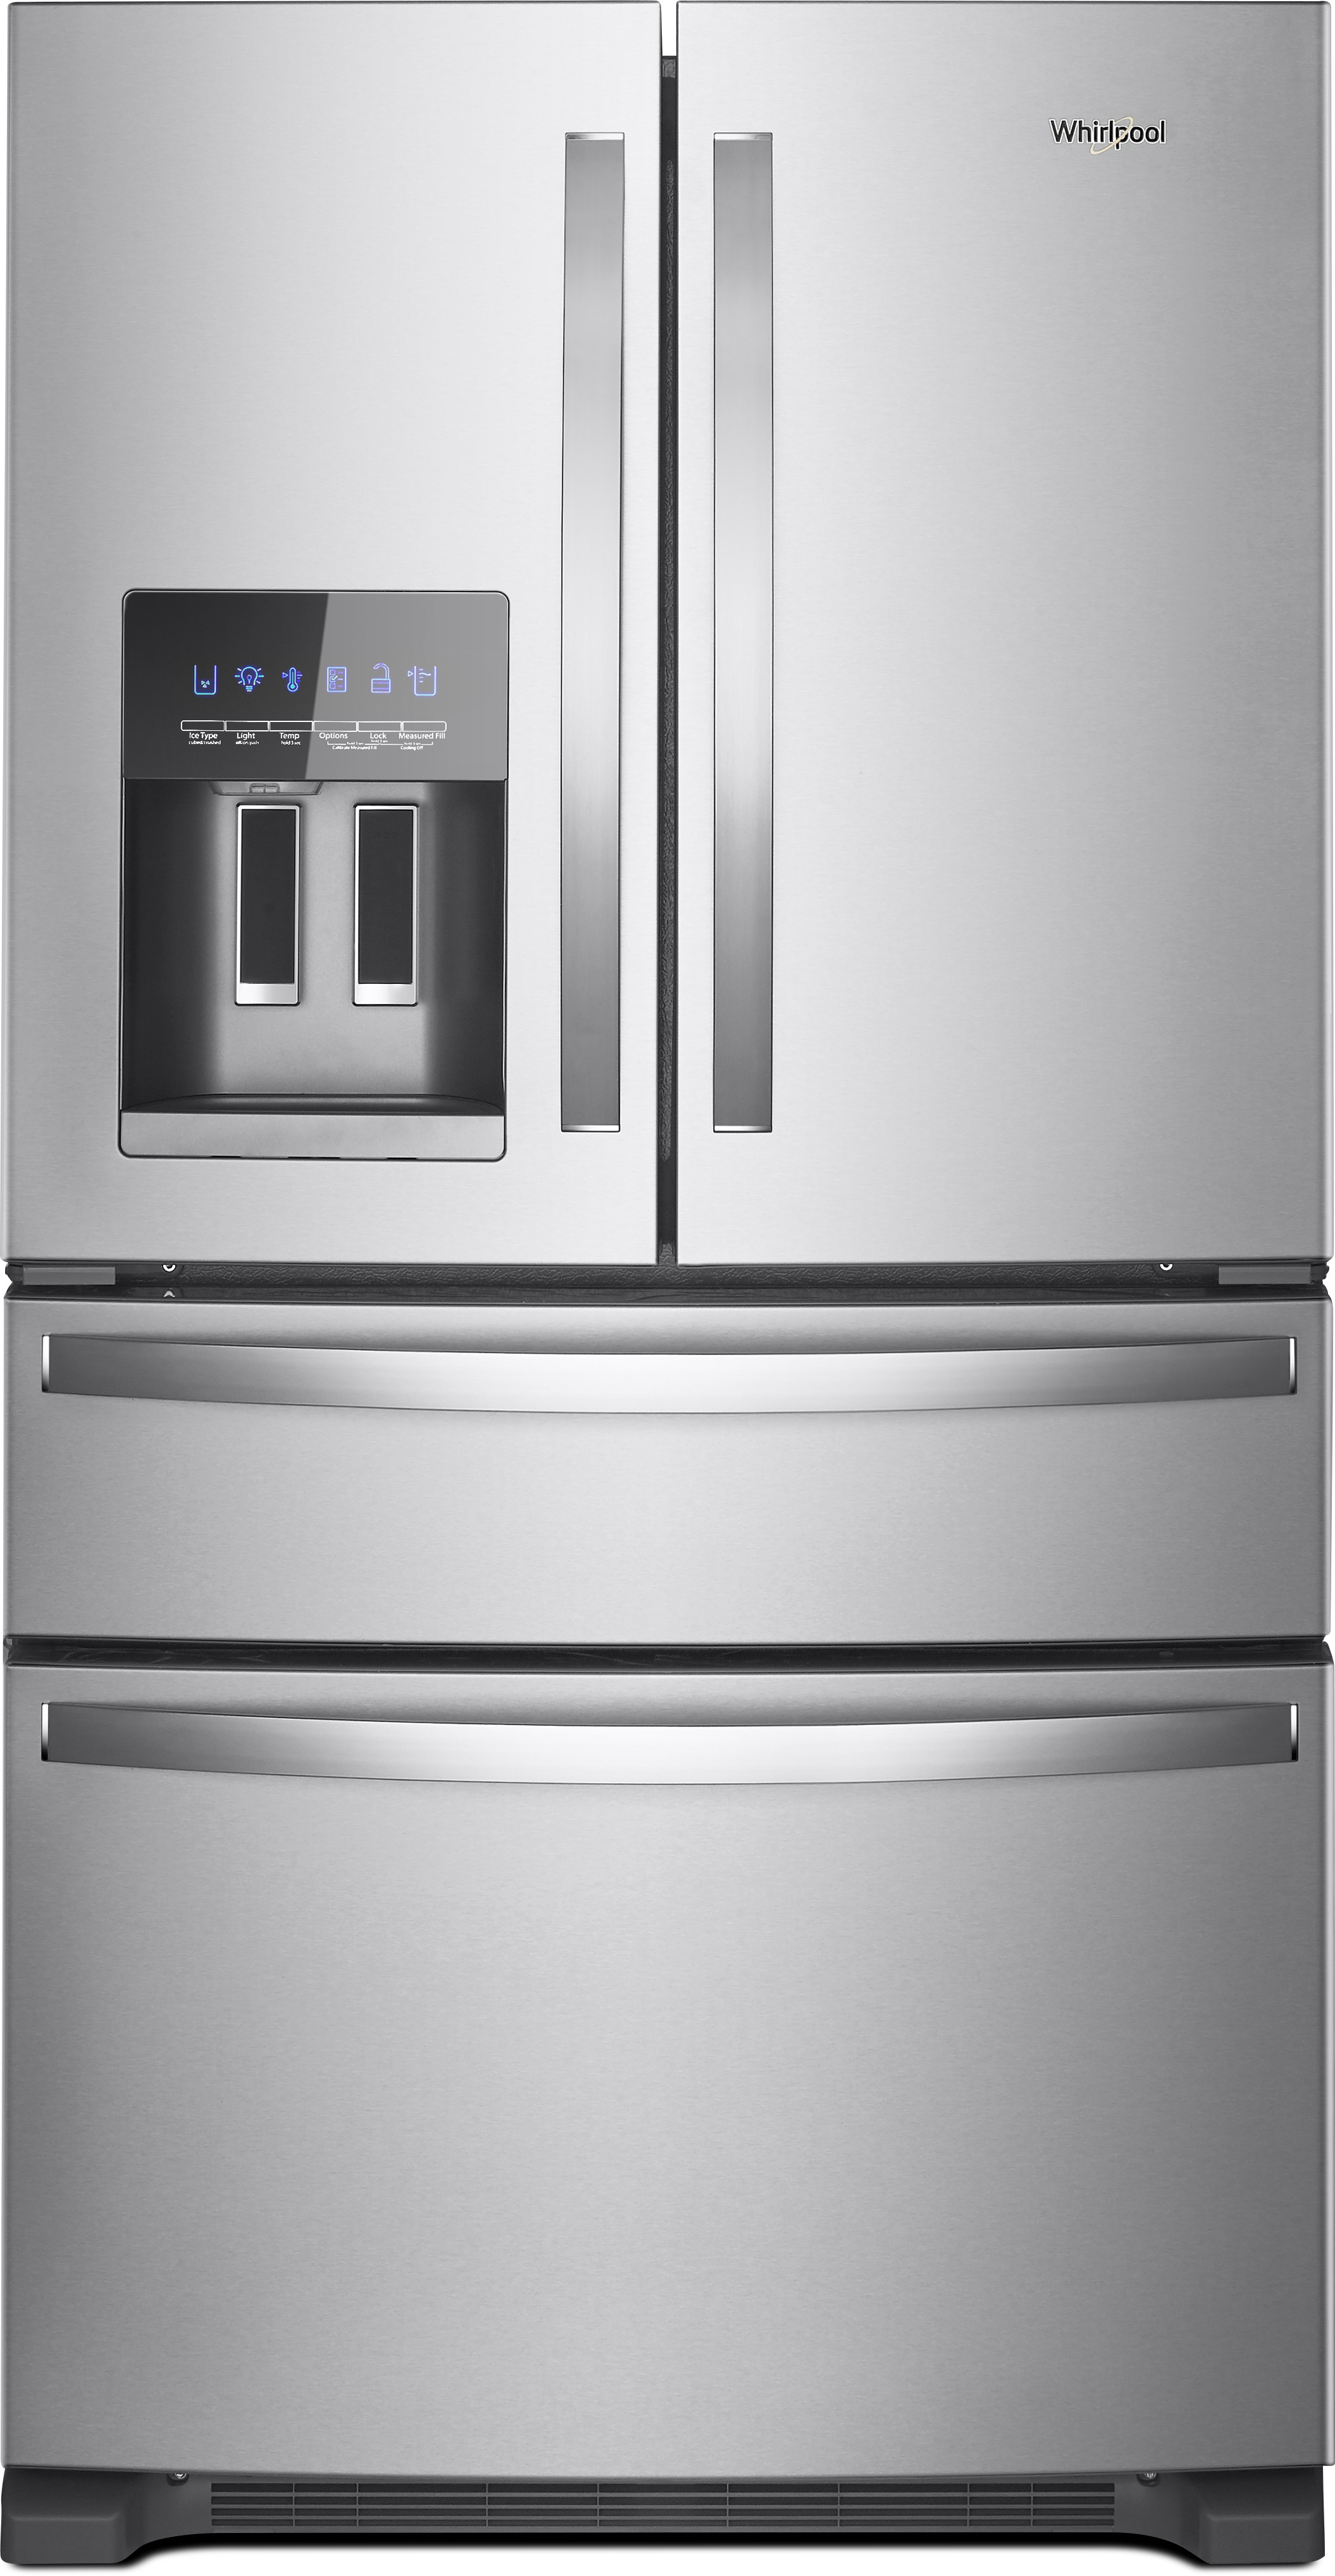 Whirlpool 24.5 cu ft 4-Door French Door Refrigerator with Ice Maker |